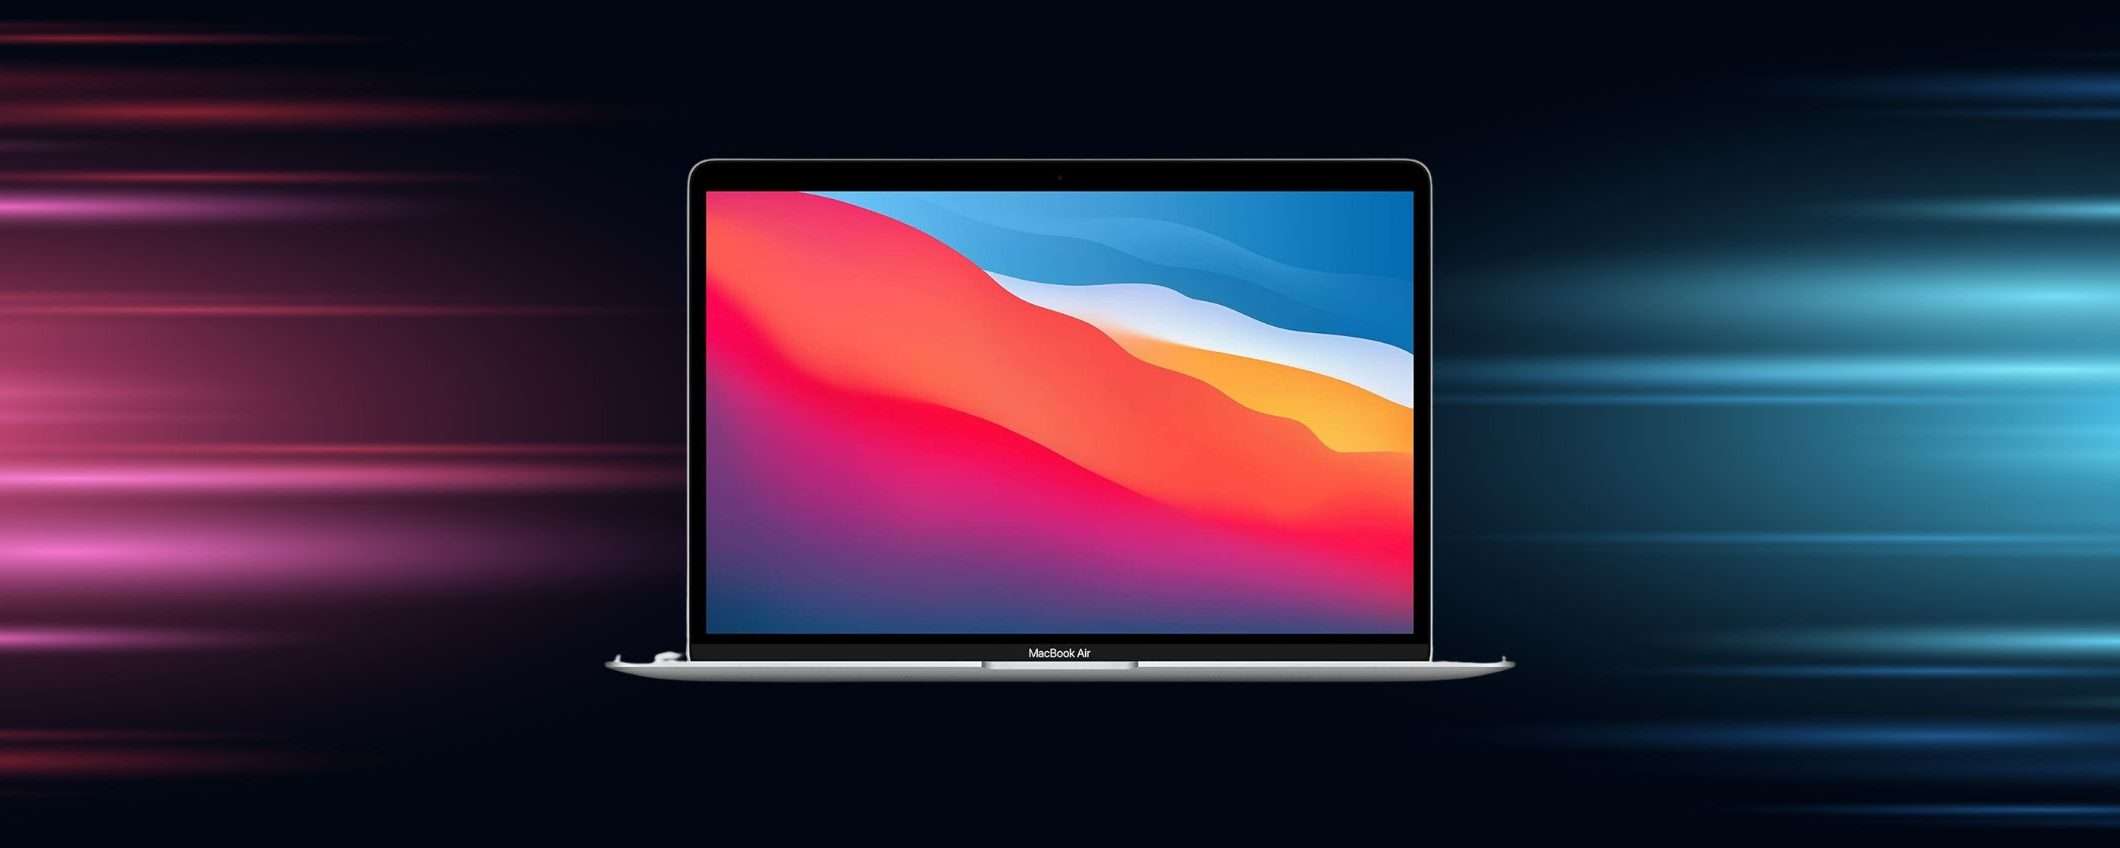 MacBook Air a 849 euro: OCCASIONISSIMA su Amazon al 31% di sconto